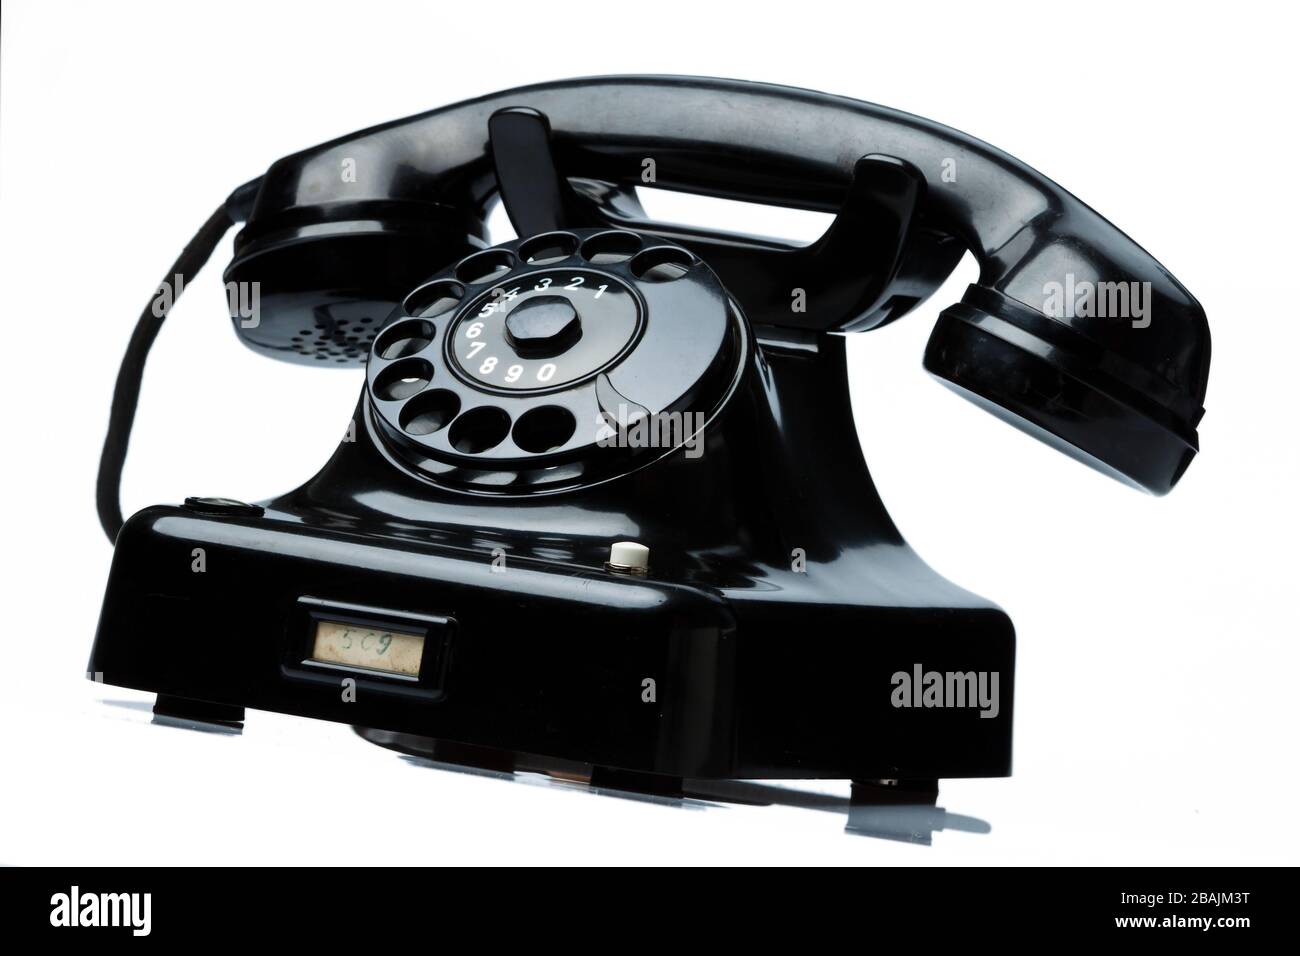 Ein antikes, altes Festnetz Telefon. Telefon auf weissem Hintergrund. Stock Photo